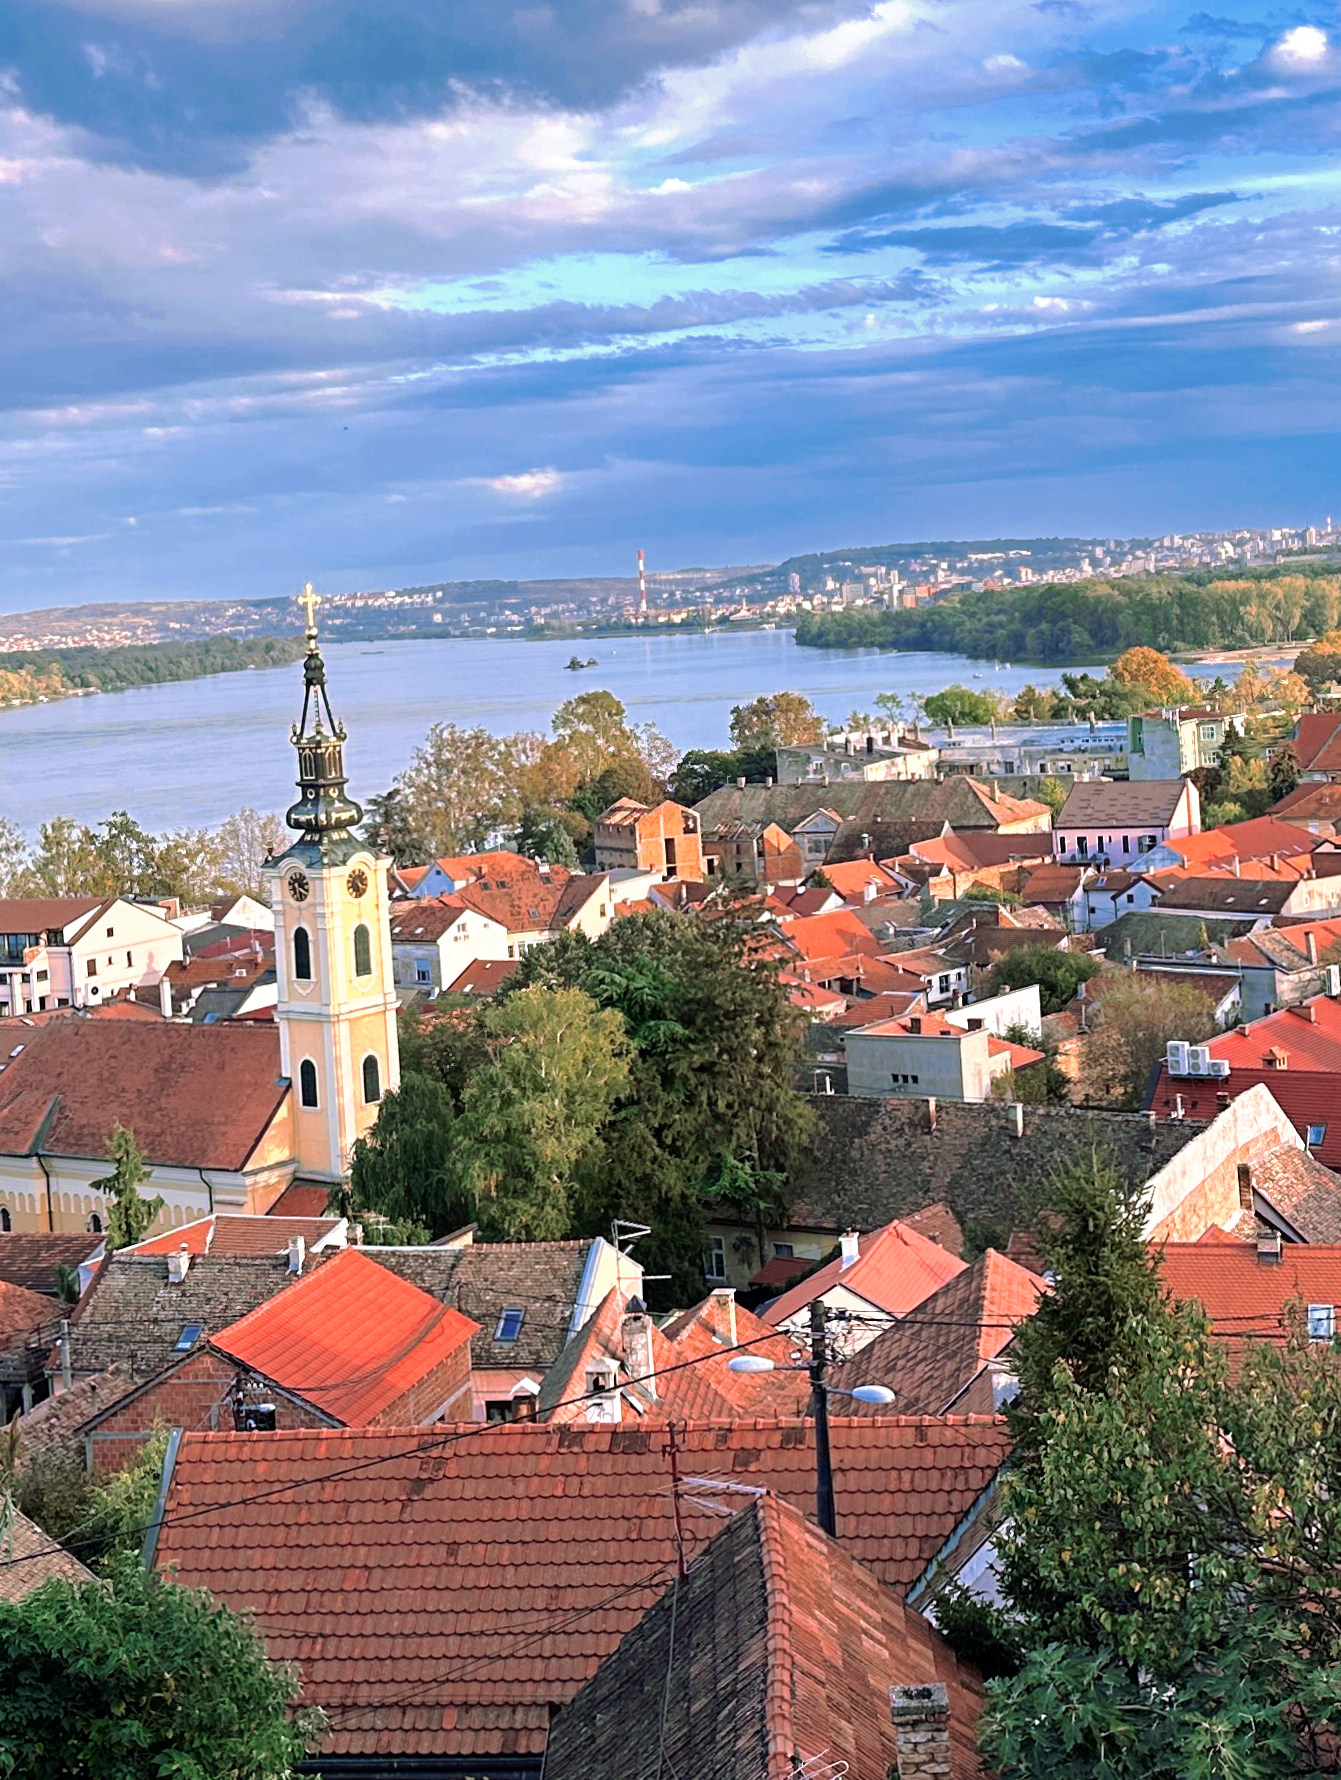 塞尔维亚🇷🇸一个俯瞰小镇的观景角度值得打卡